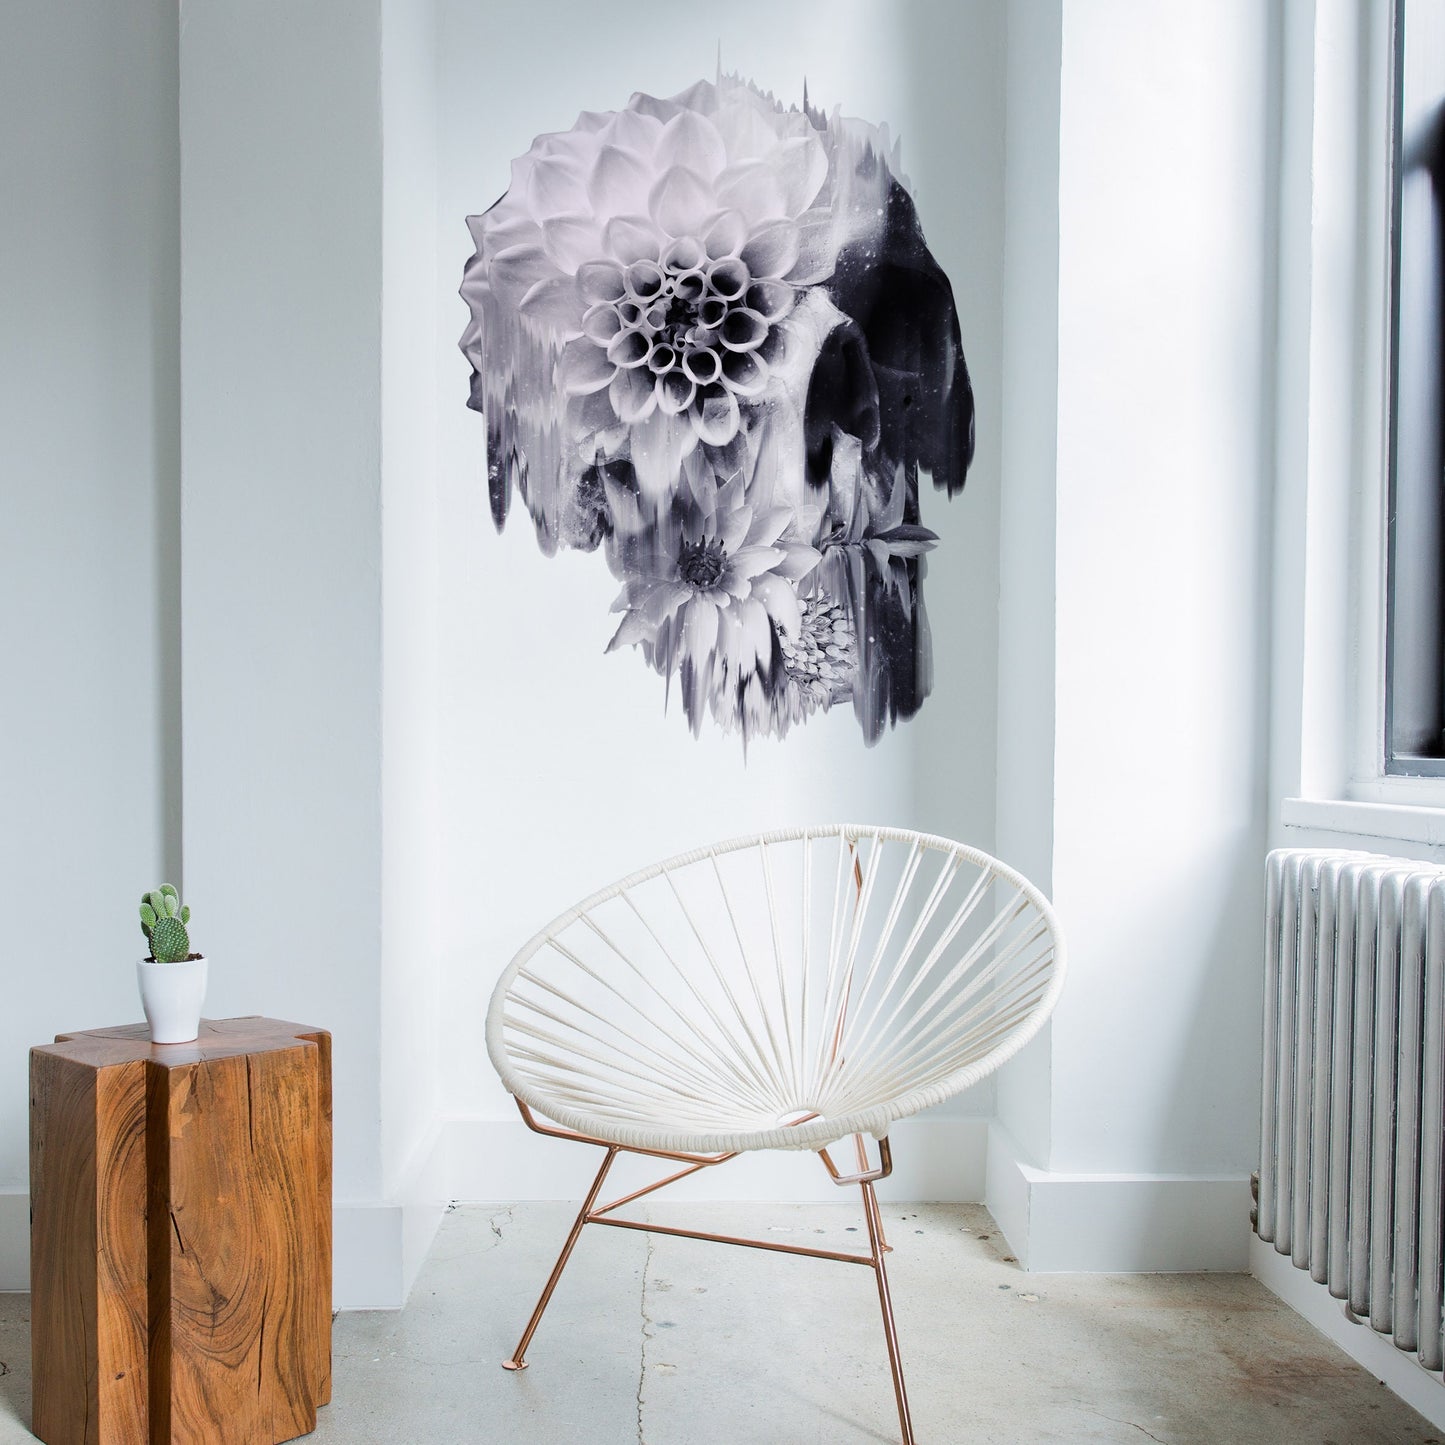 Skull Wall Sticker, Flower Skull Art Wall Decal, Vinyl Sugar Skull Home Decor, Gothic Skull Wall Art Gift, Floral Sugar Skull Art Wall Decal